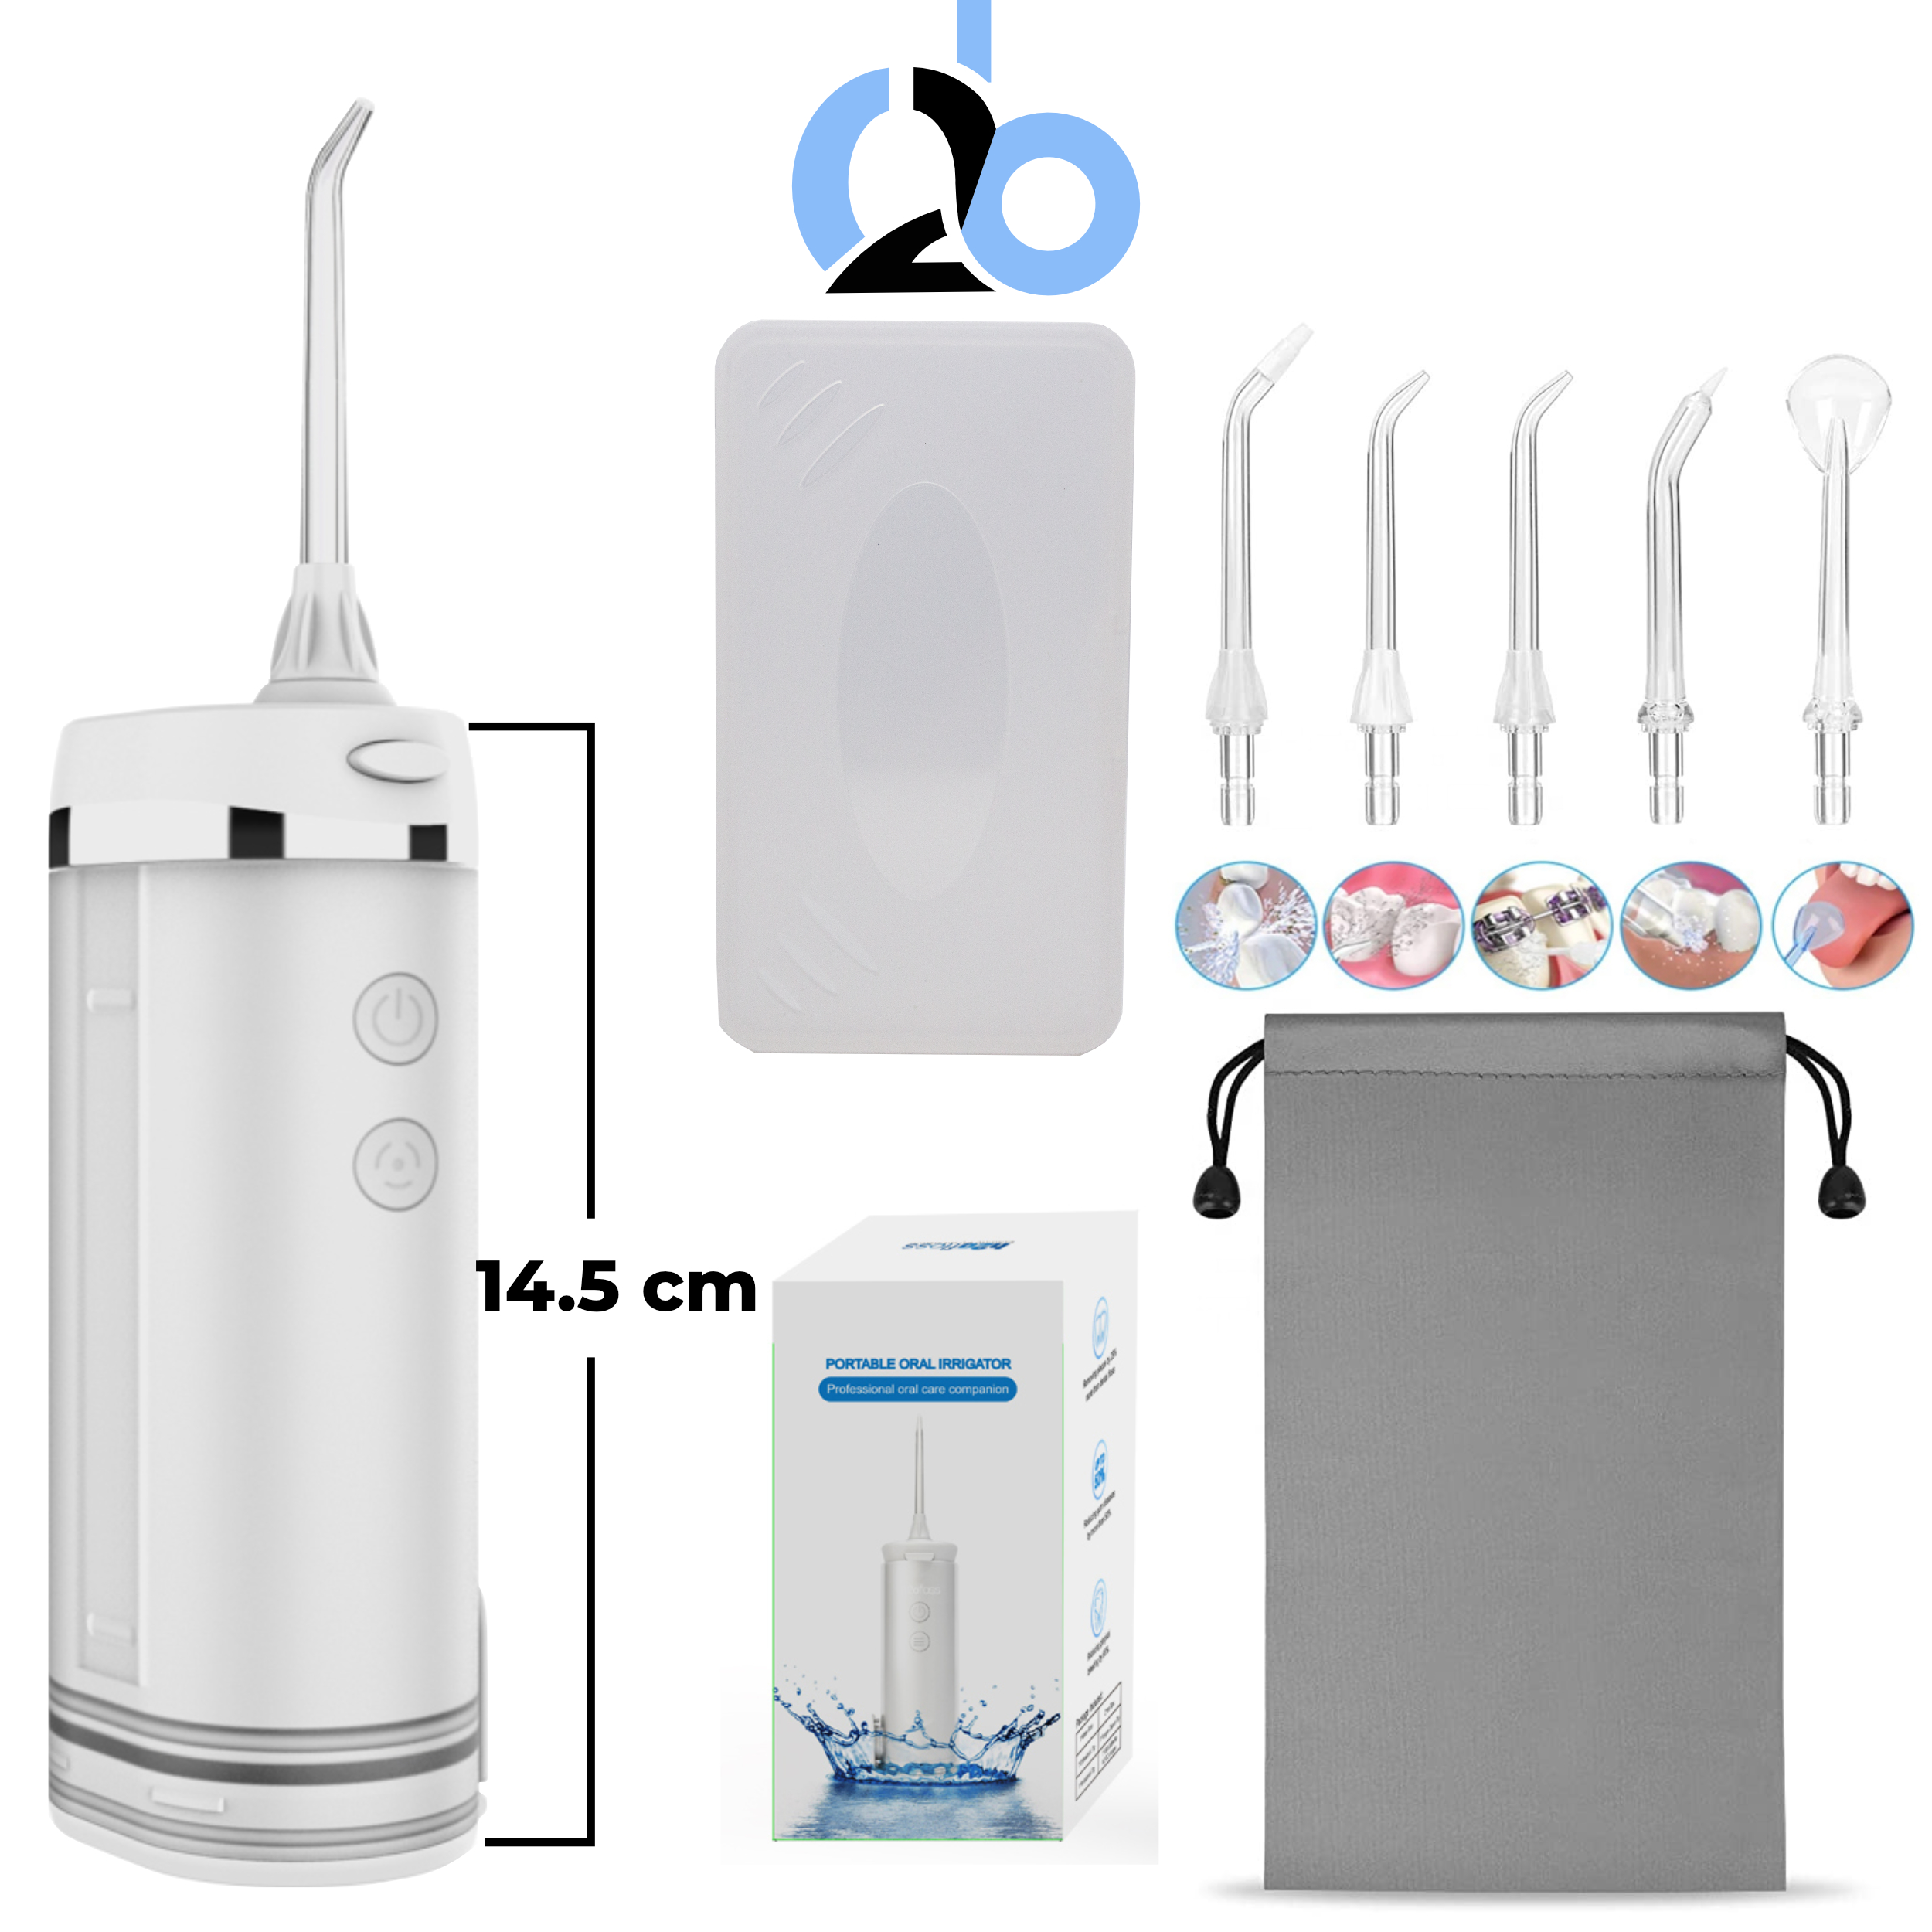 Tăm nước cầm tay H2ofloss HF-10, phiên bản tăm nước mini nhỏ gọn chỉ 14.5 cm dành cho người di chuyển nhiều - Mini trắng